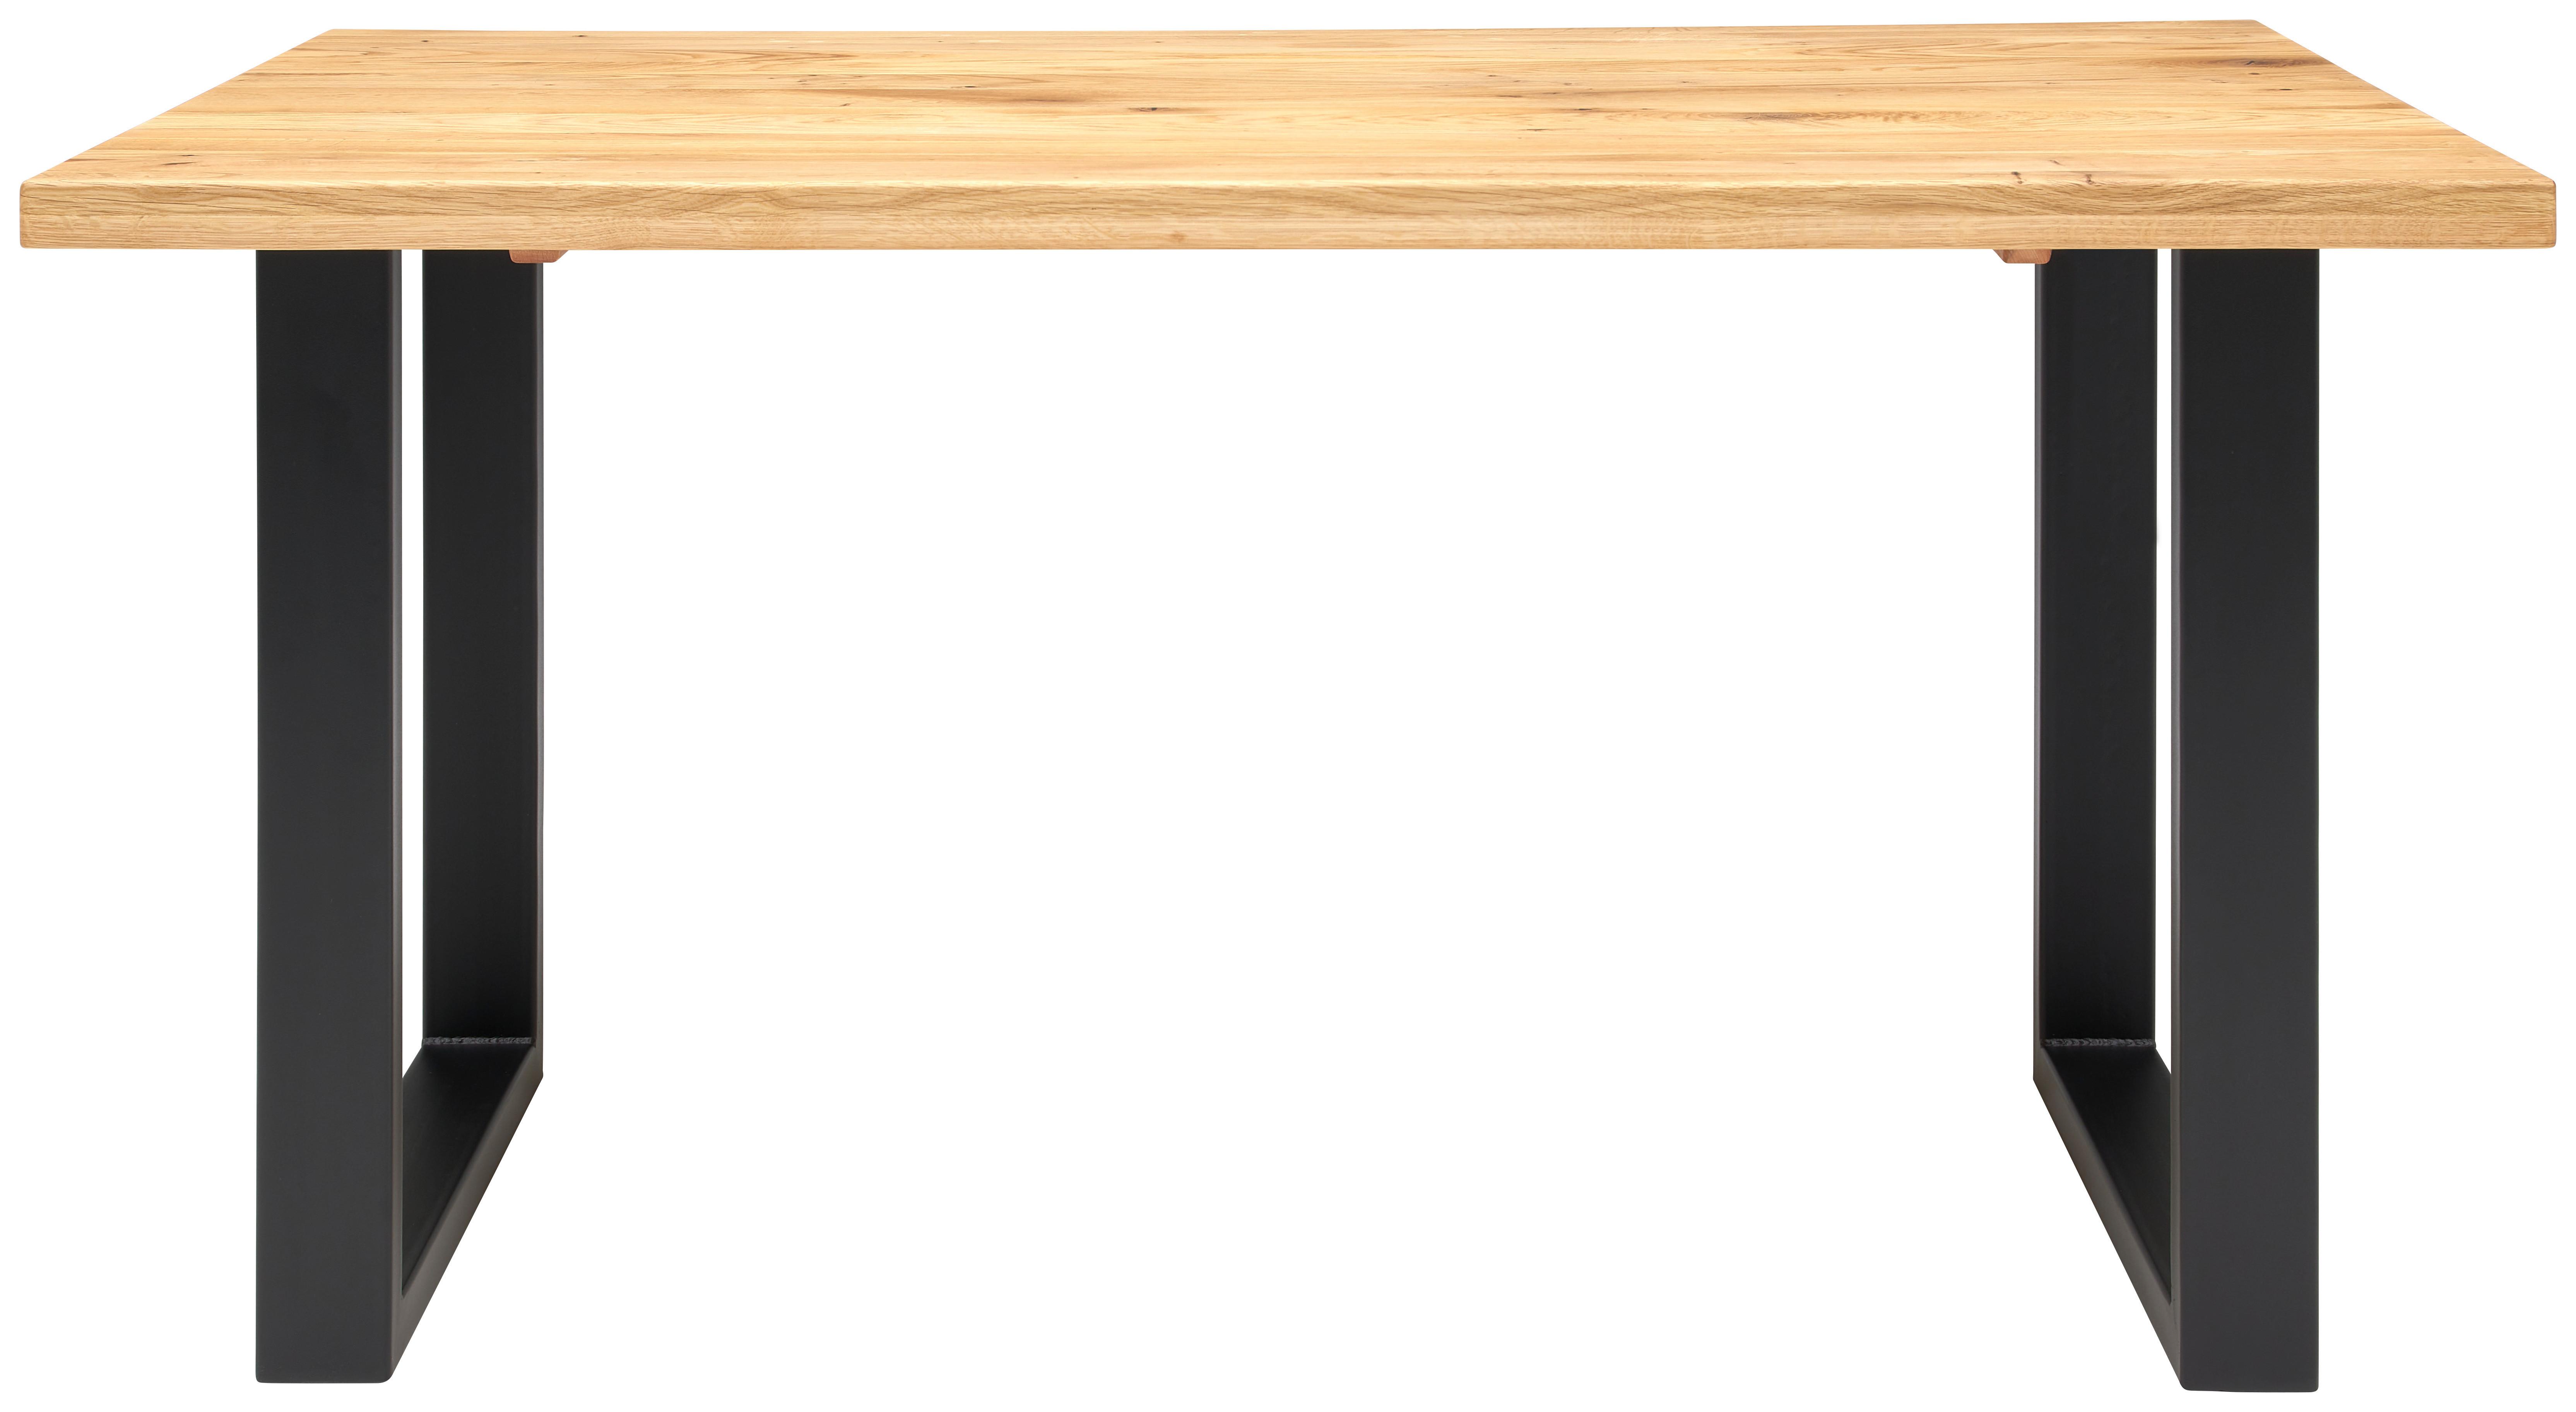 Jídelní Stůl Rockford 140 - barvy dubu, Konvenční, kov/dřevo (140/76/90cm)